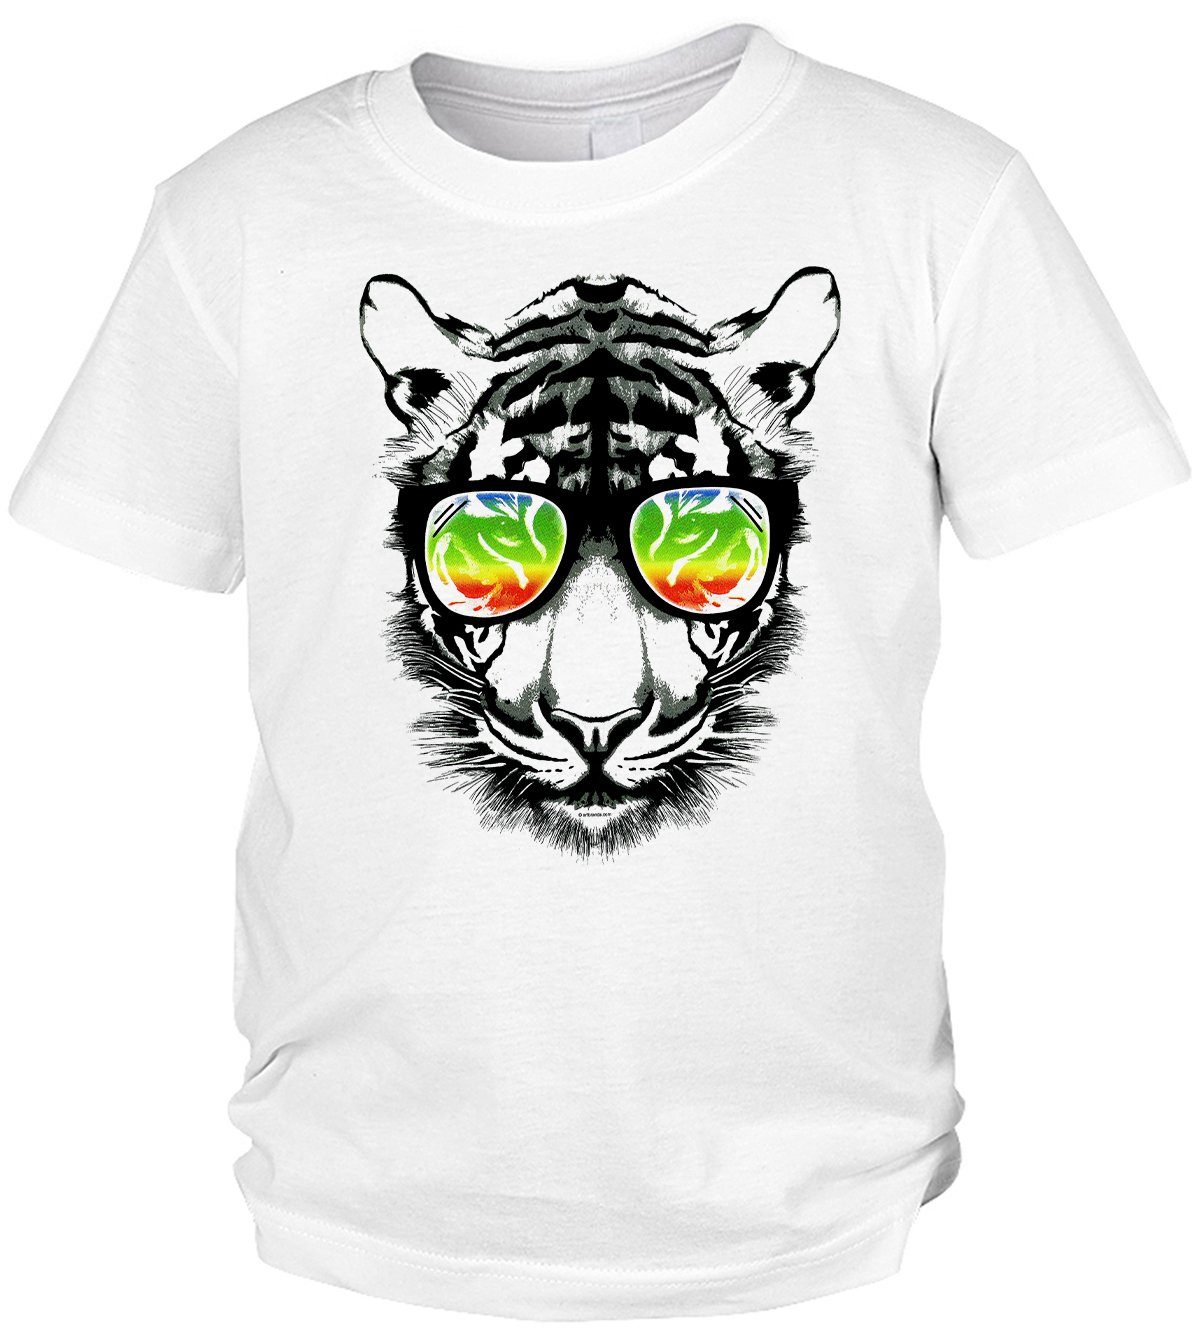 Kindershirt Retro Tiger Shirts - für : Tigershirt buntes Motiv Tiger Print-Shirt Kinder Tini